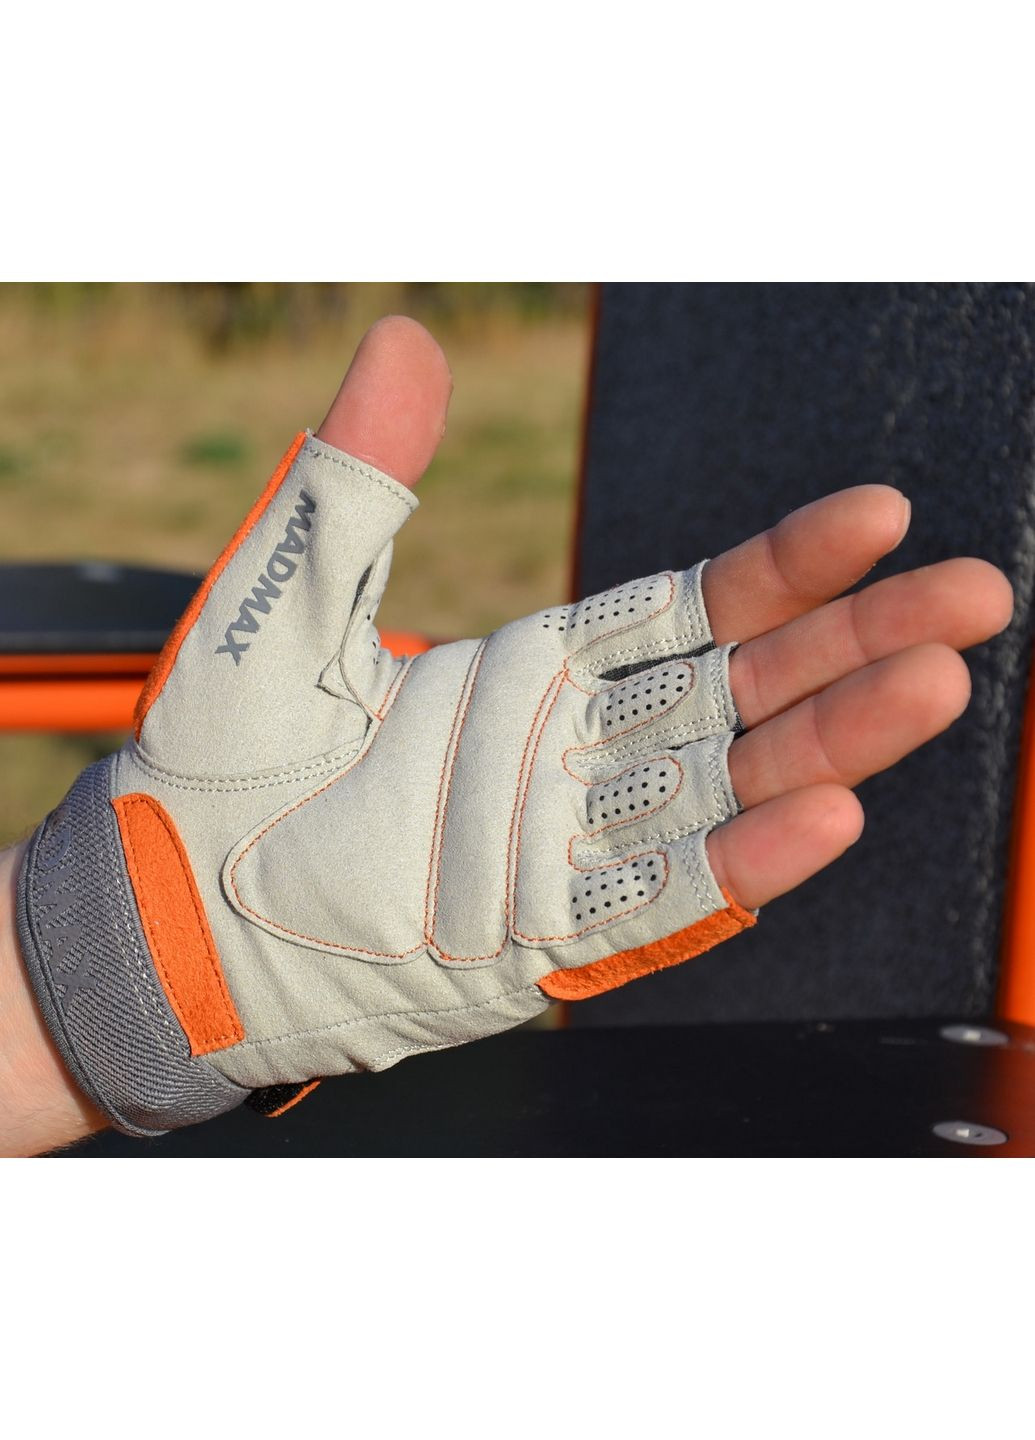 Унісекс рукавички для фітнесу M Mad Max (279321246)